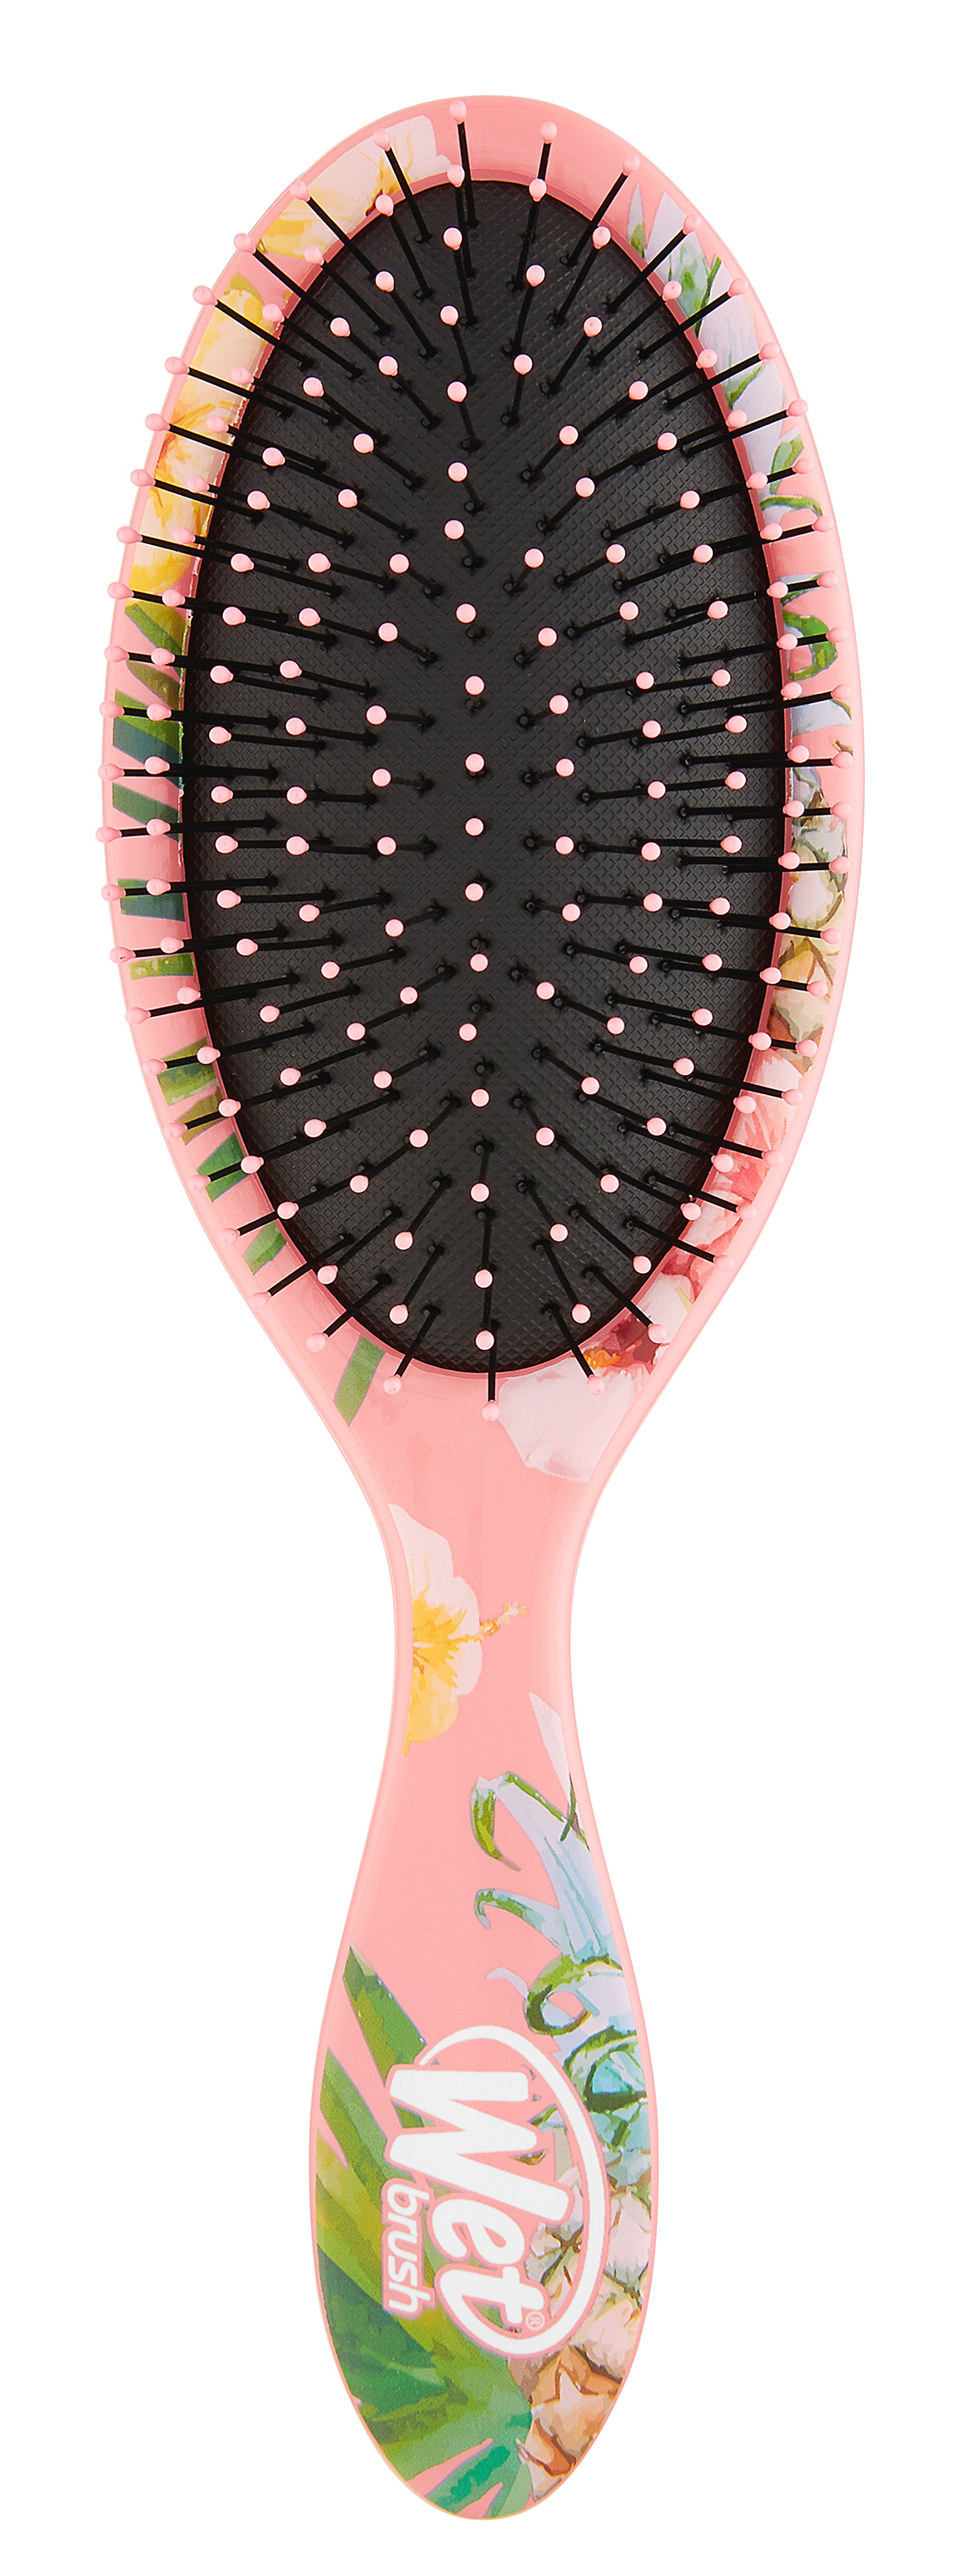 Wet Brush Щетка для спутанных волос Тропики, розовый ананас / WET BRUSH TROPIC DETANGLER (Pink Pineapple)